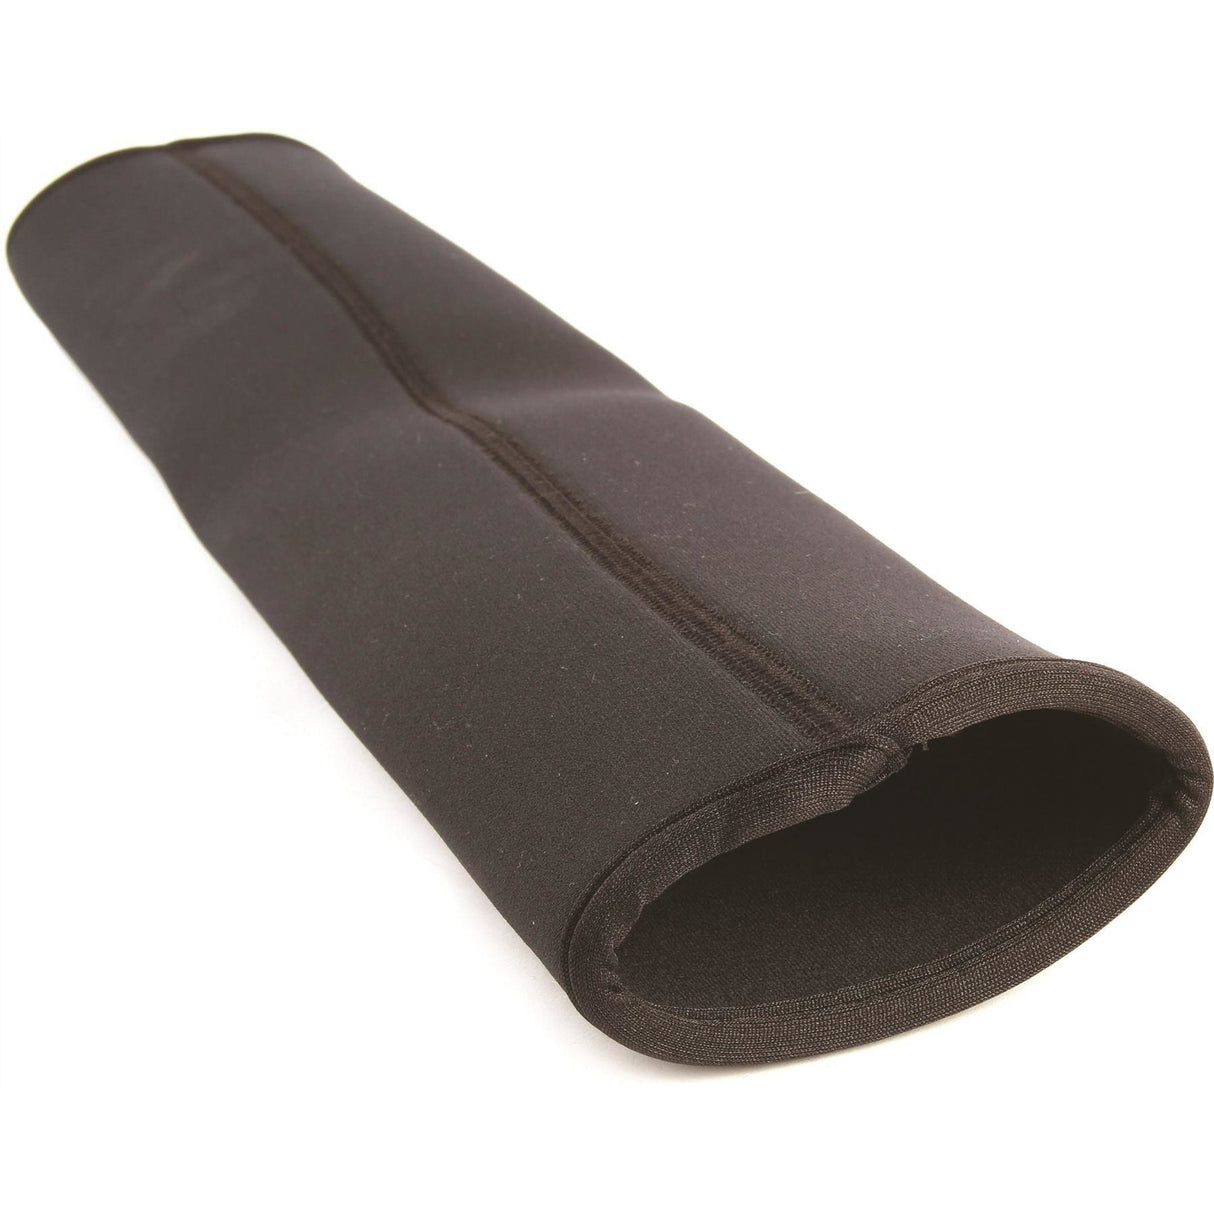 Cubierta de circunferencia de neopreno de Hycomfort - Negro - 65 cm